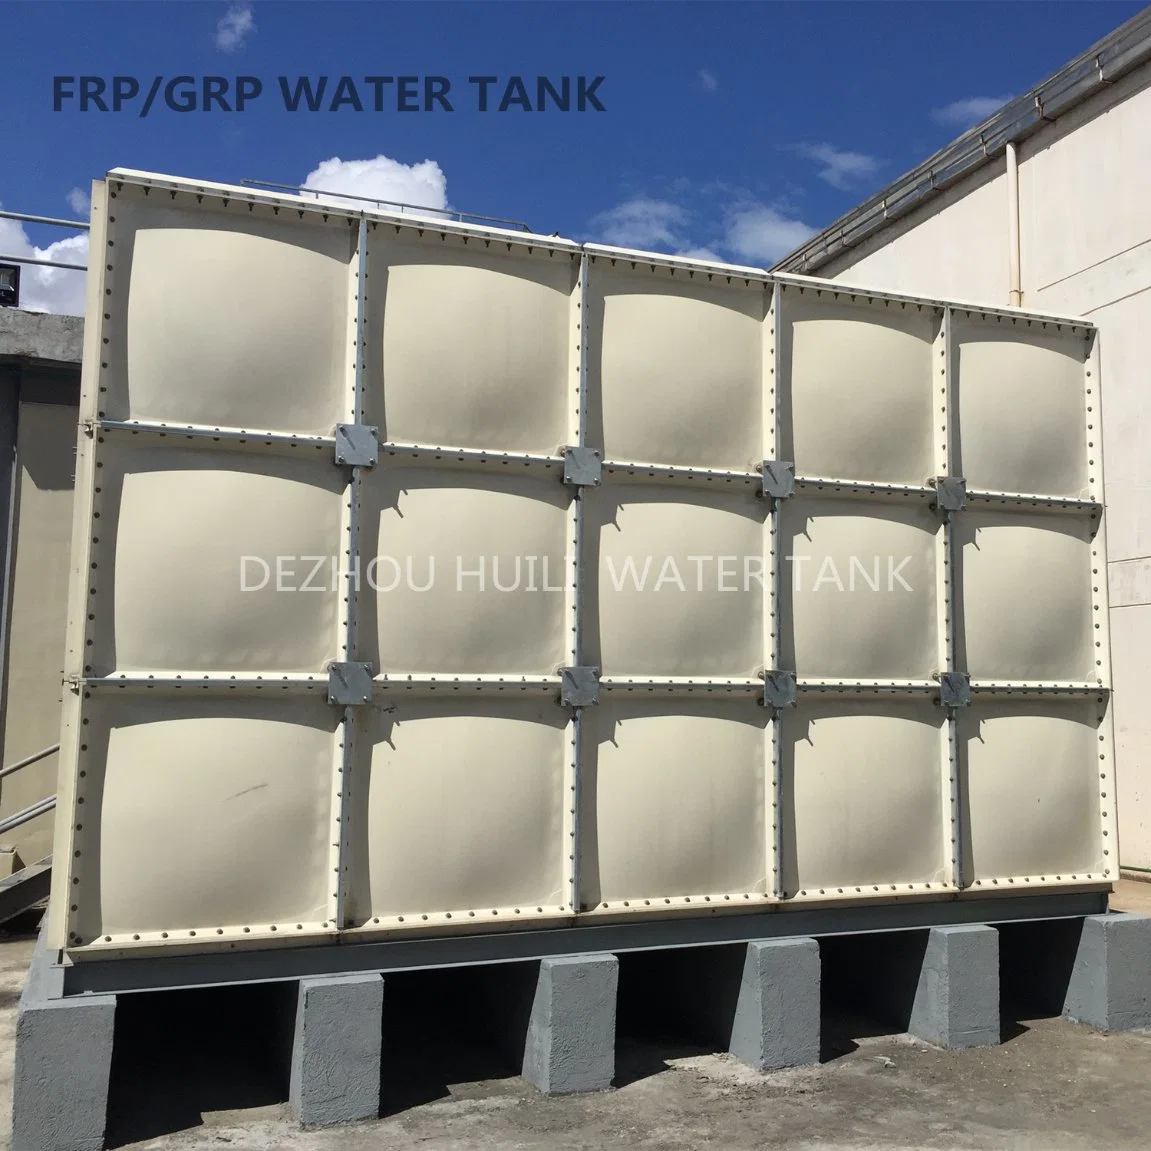 Heißer Verkauf 100000 Liter GRP FRP Fiberglas rechteckiges Regenwasser Lagertank in Malaysia verwendet Lebensmittelqualität Wasserbehälter billig Preis